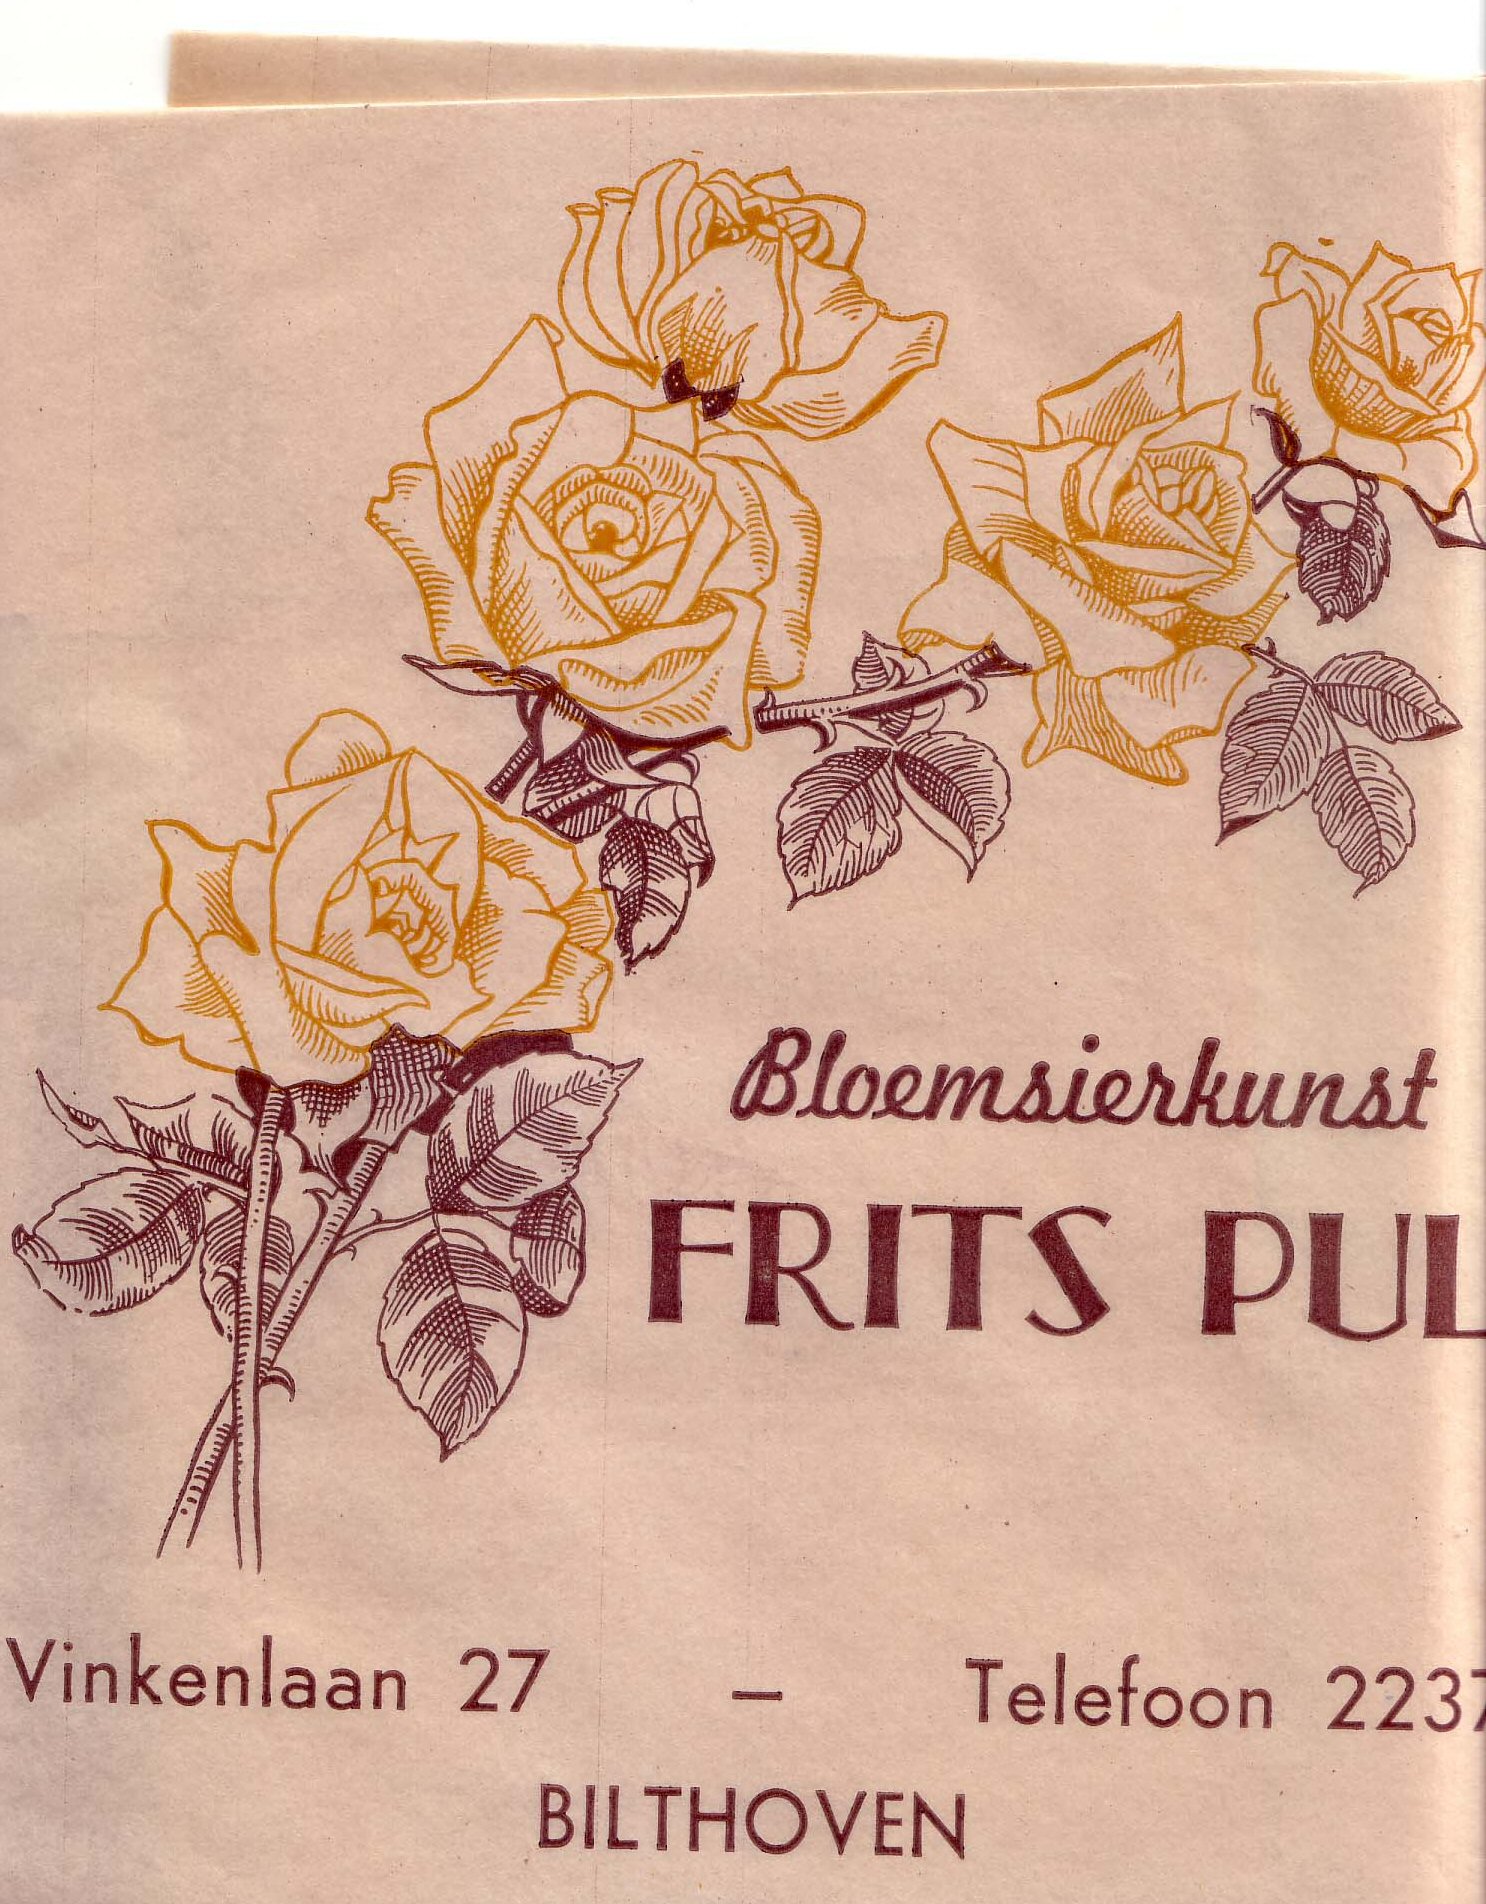 Het inpak papier dat Frits (Frederik) Pul gebruikte in zijn bloemenzaak